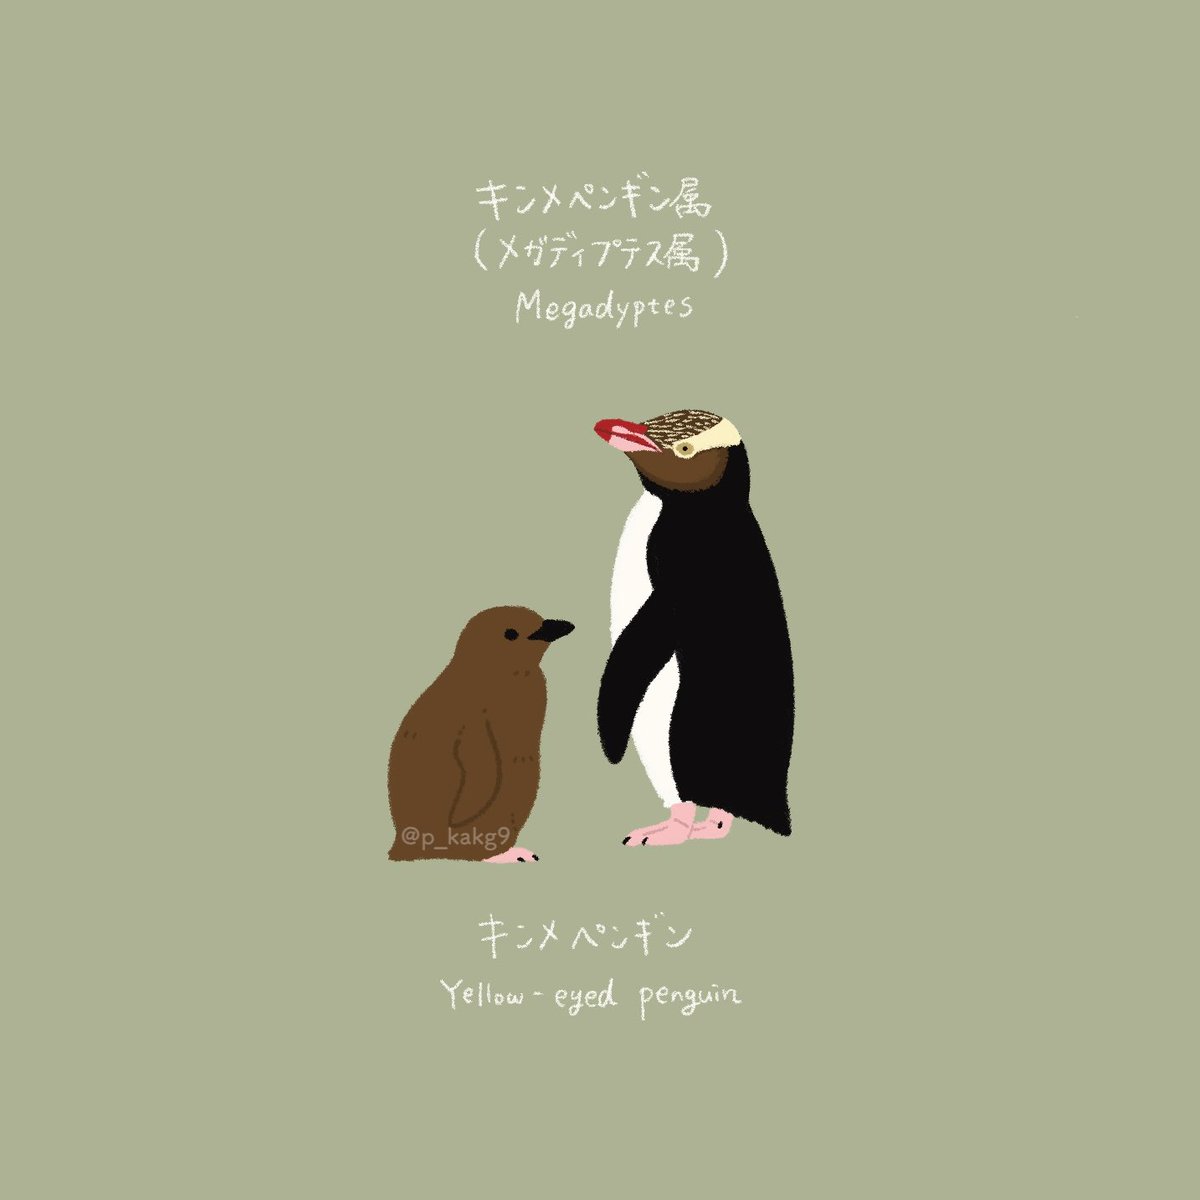 「オウサマペンギン属とキンメペンギン属」|きゅう🐧多忙につき低浮上のイラスト